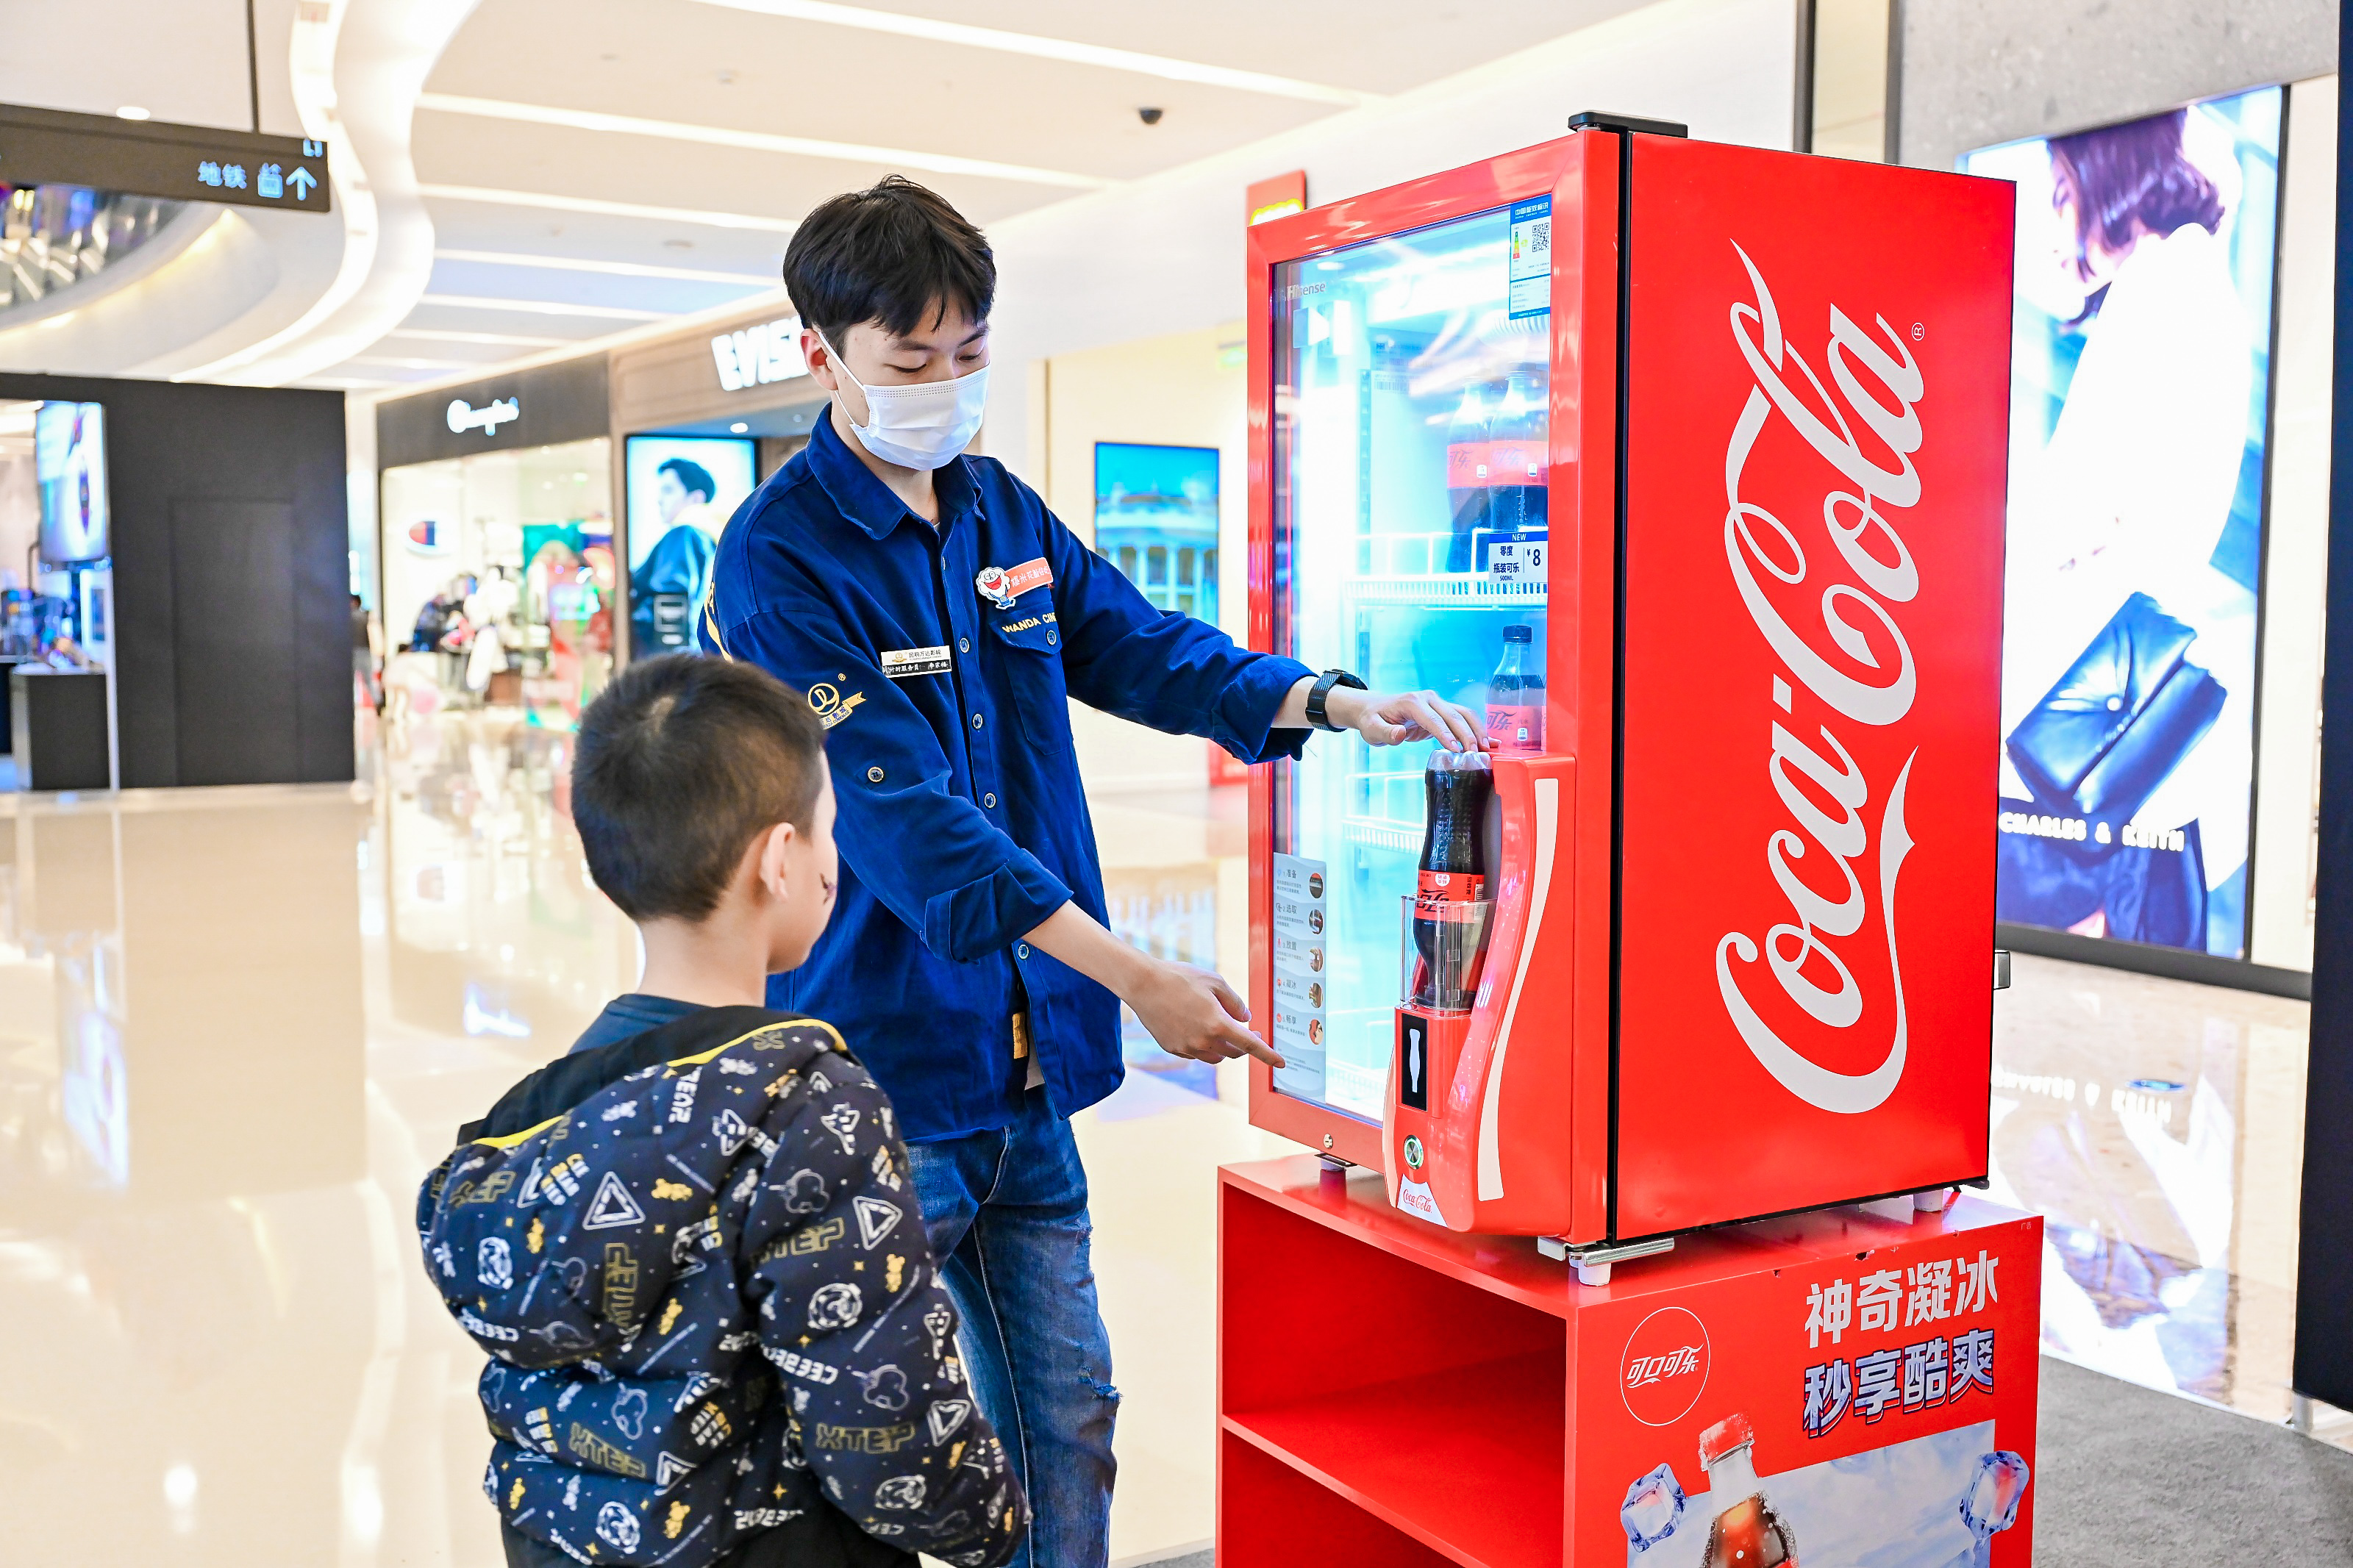 工作人员给小男孩展示制冰机有10秒钟内把可乐“冰镇”。